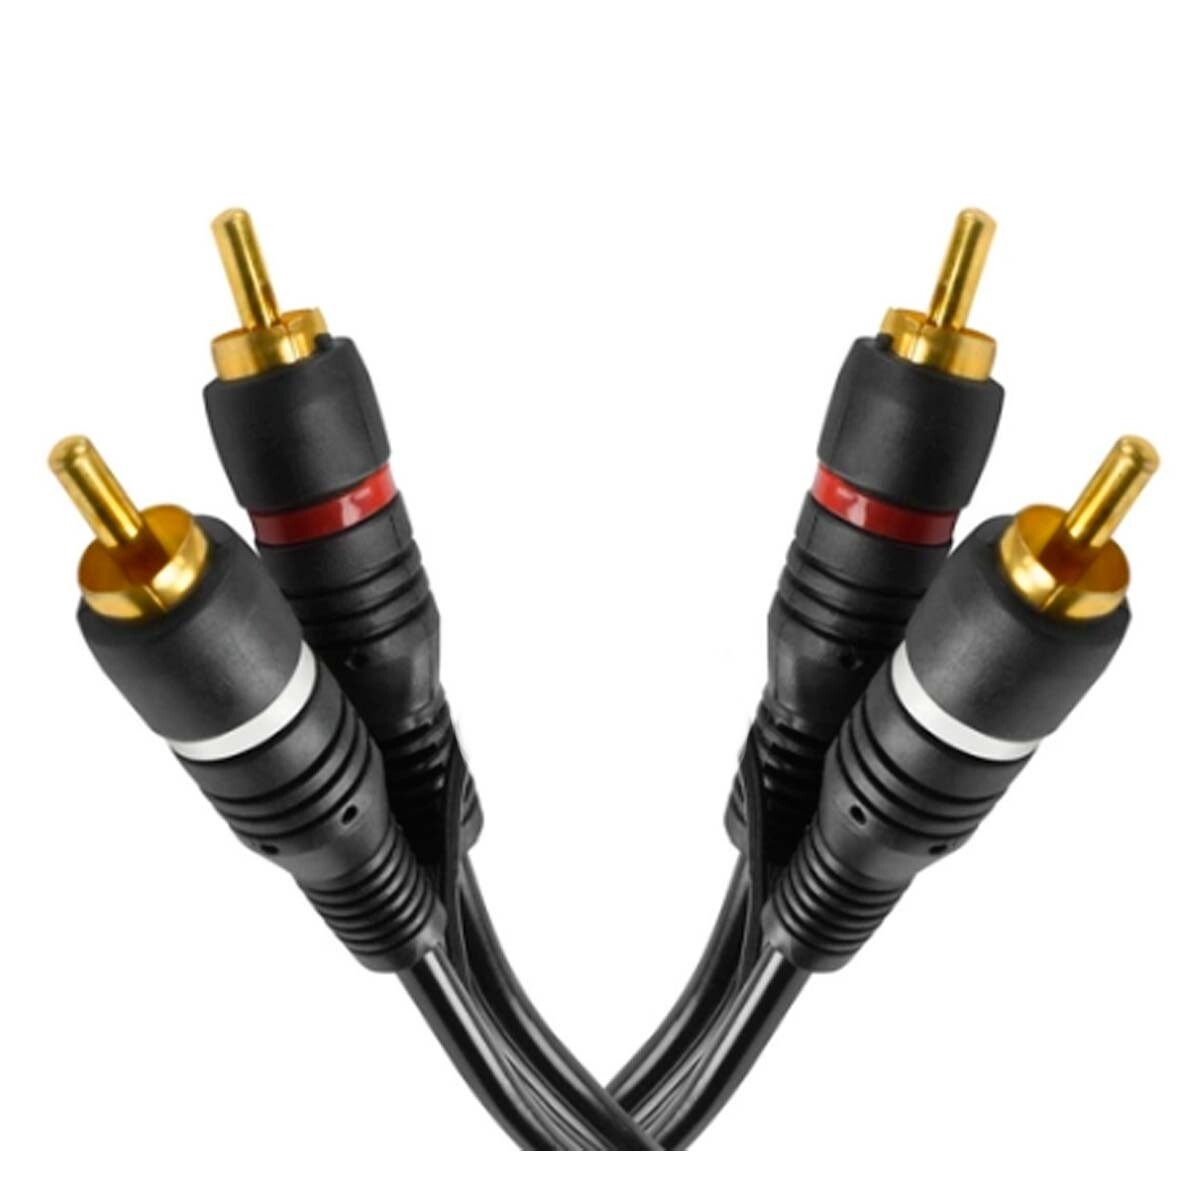 Cable Adaptador Soundking Bi139 5mts 2rca A 2rca 